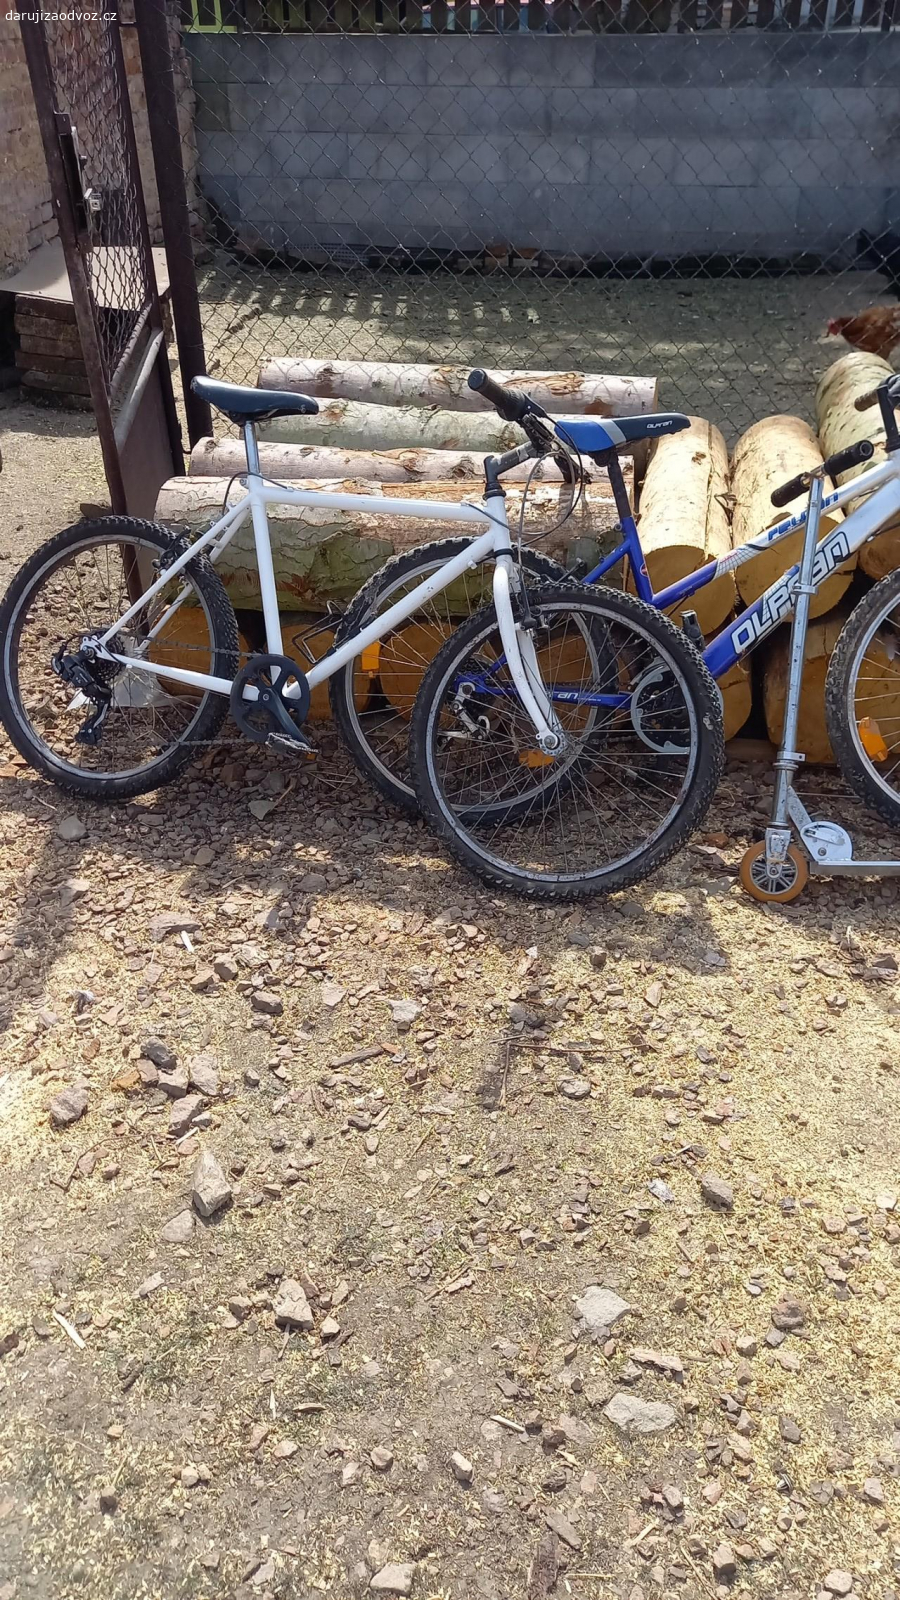 dětská kola a koloběžka. 2x tříčtvrteční dětské kolo a koloběžka, po menší  opravě pojízdné.